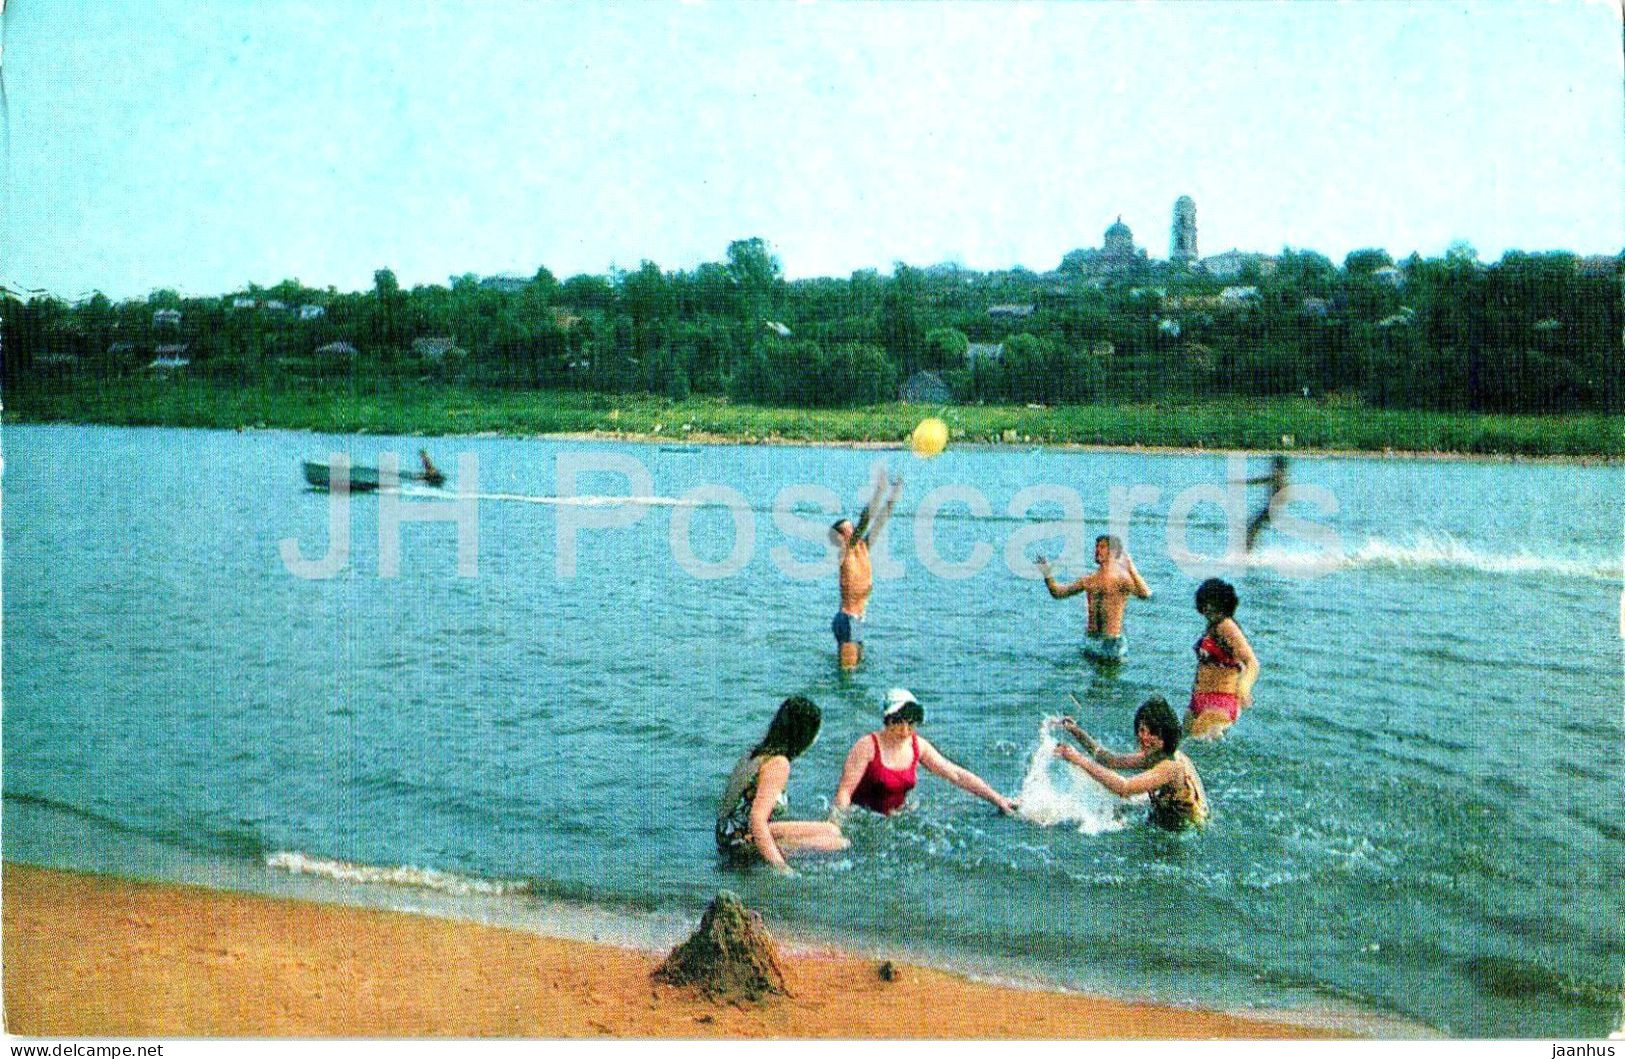 Shatura - Oka River - Swimming - Turist - 1975 - Russia USSR - Unused - Rusland